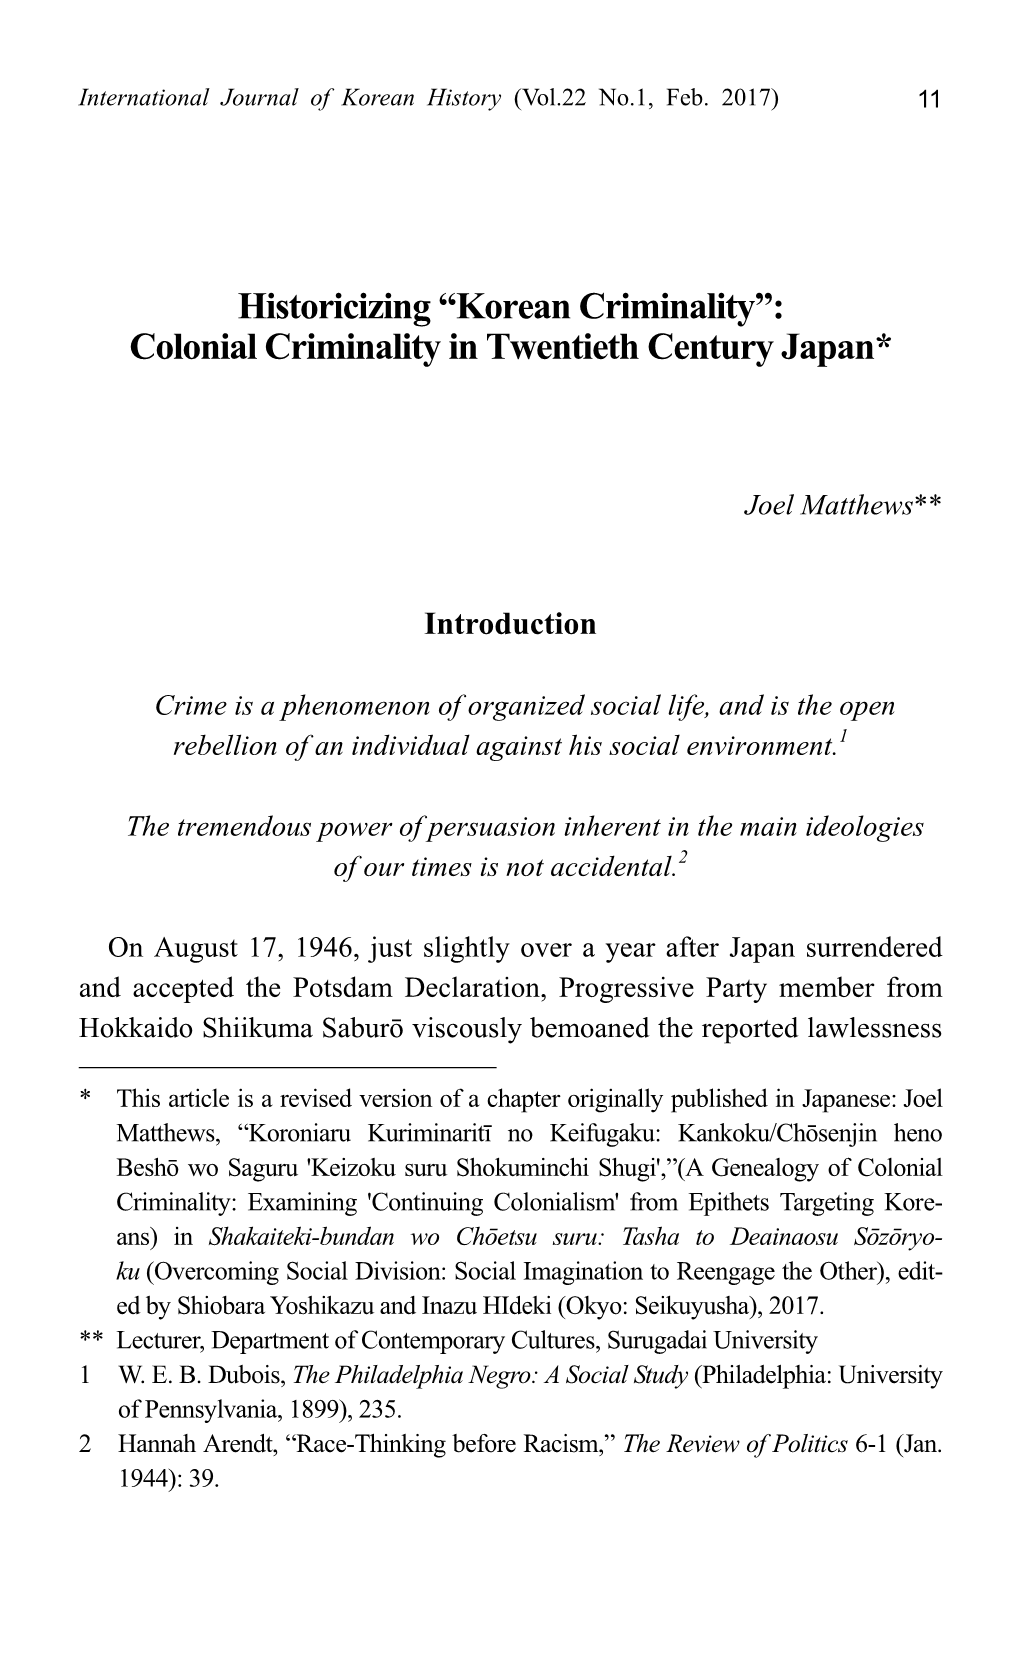 Colonial Criminality in Twentieth Century Japan*